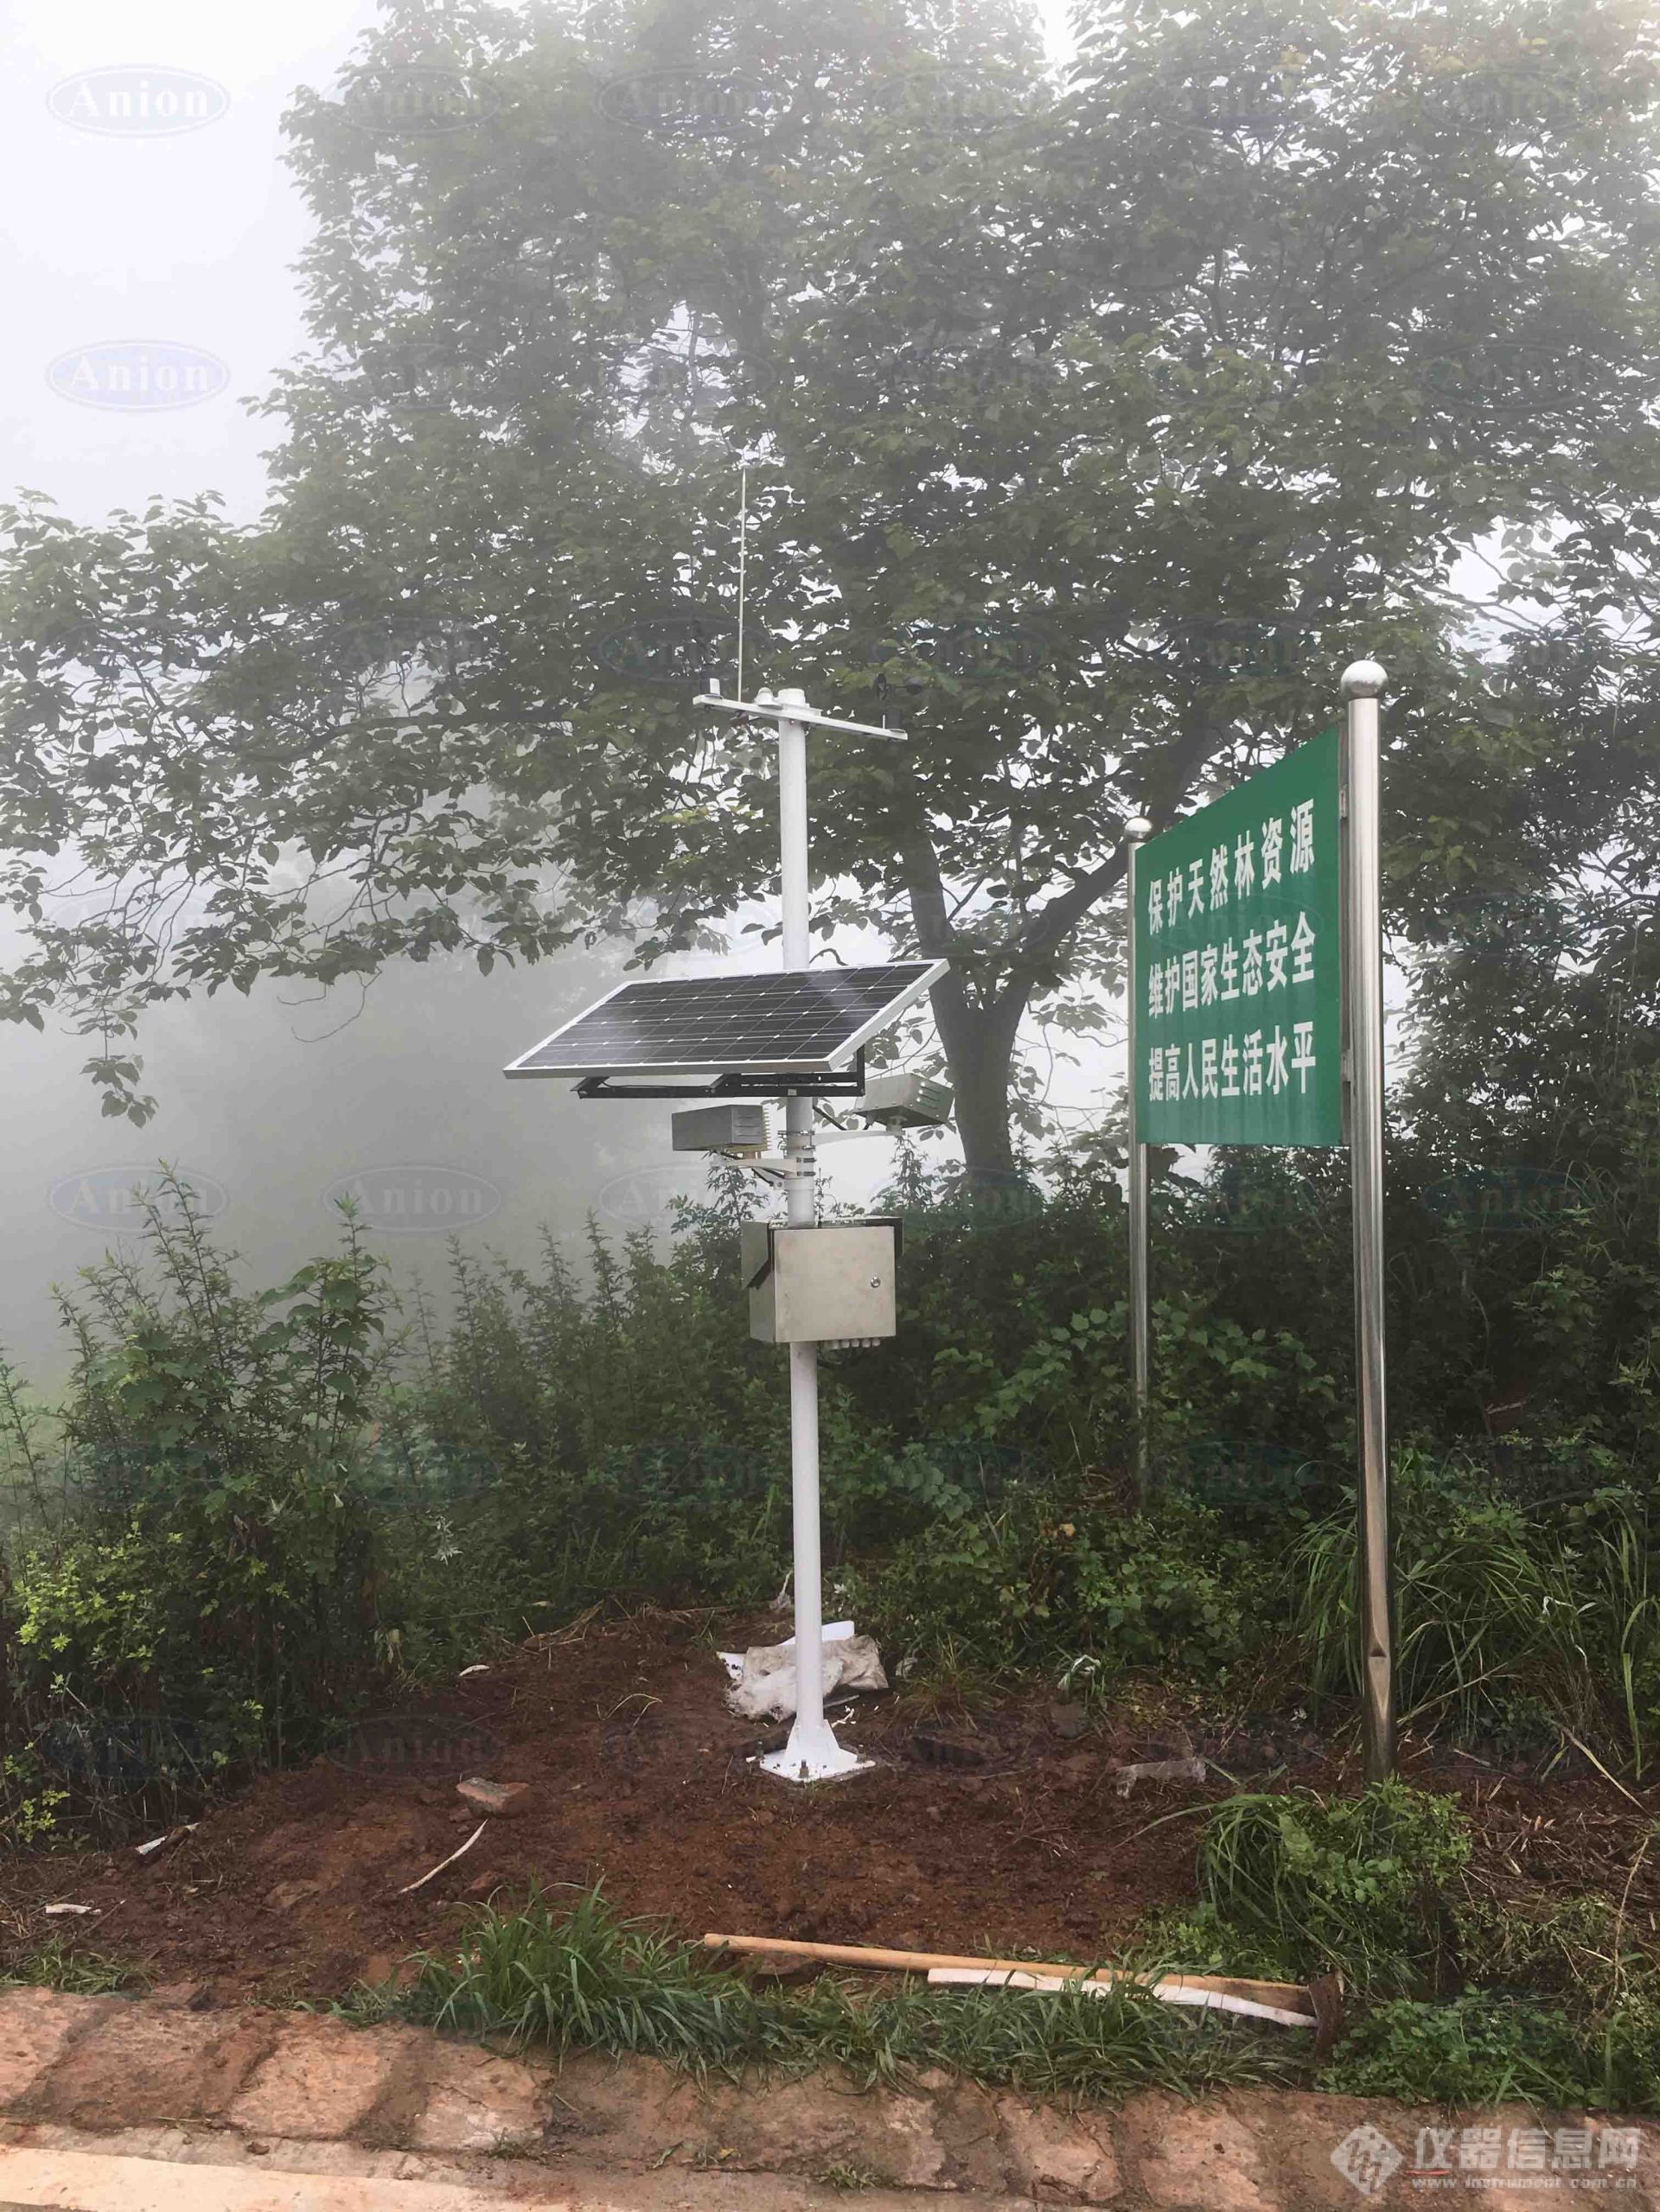 我司为四川省黑宝山森林公园建设大气负氧离子监测系统